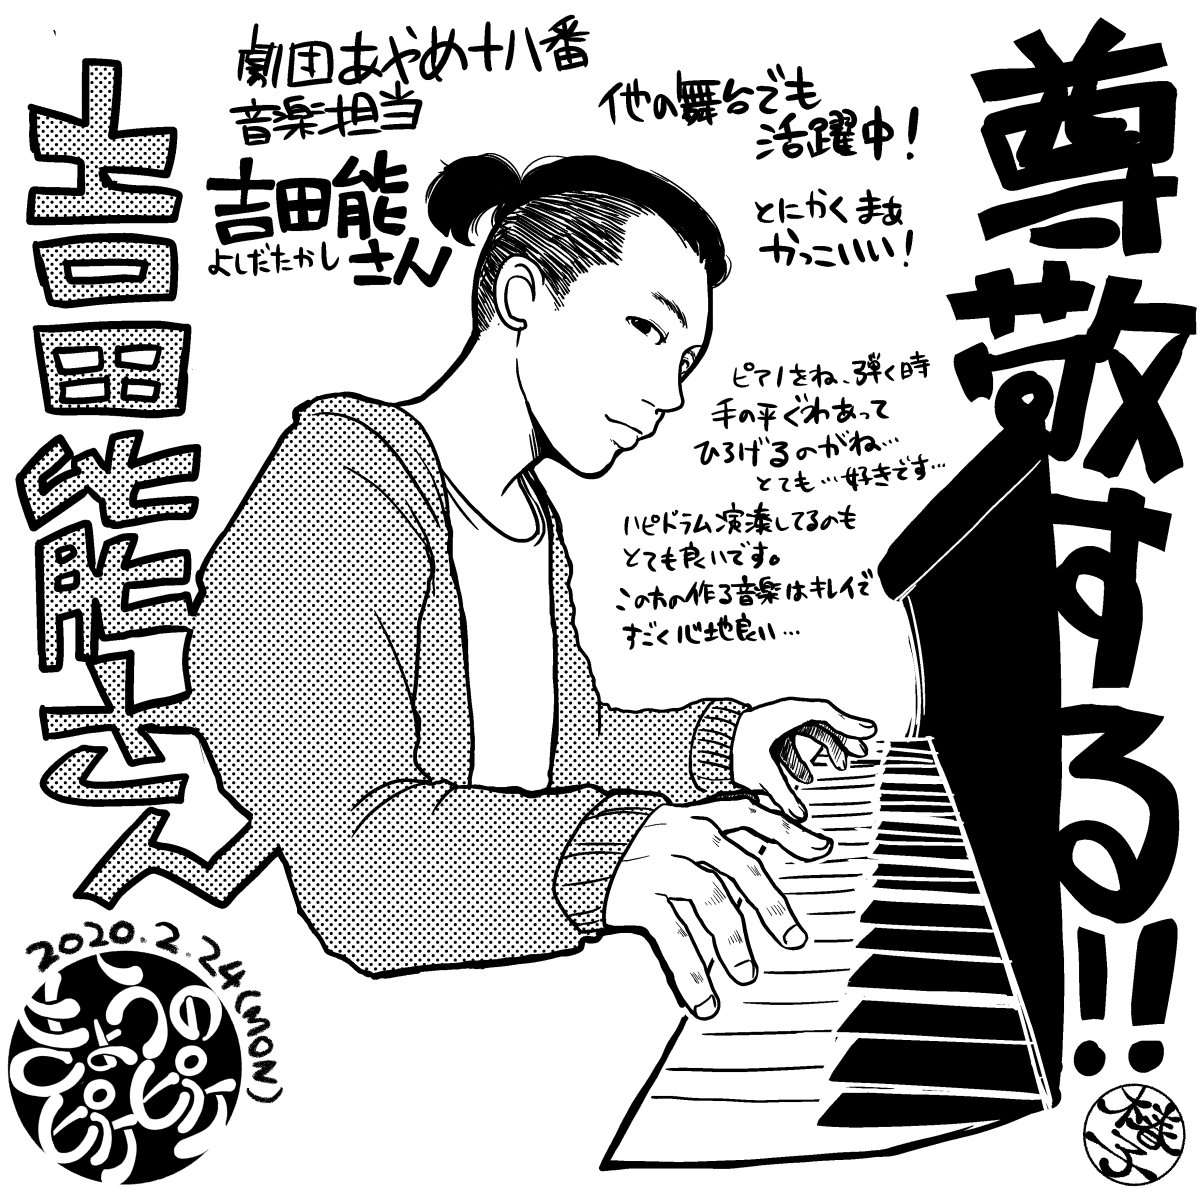 吉田能さんがめちゃめちゃ好きなのでダイマ。ほんと素敵な音楽を創り出し奏でる方なのです...。

#きょうのピケピケ
#吉田能 